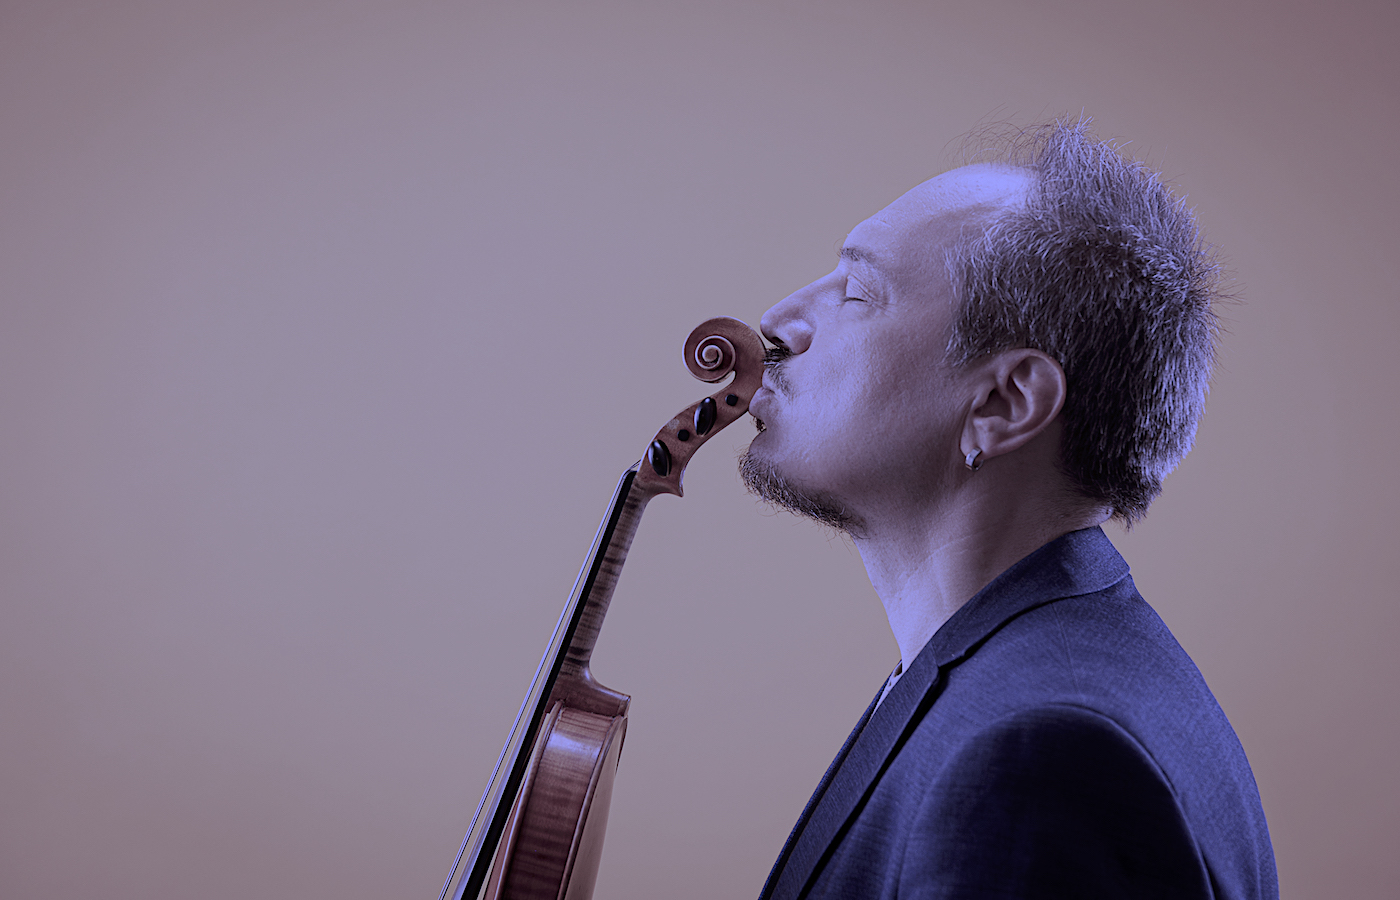 In arrivo un nuovo singolo, video, tour e progetto artistico per il violinista Luca Ciarla